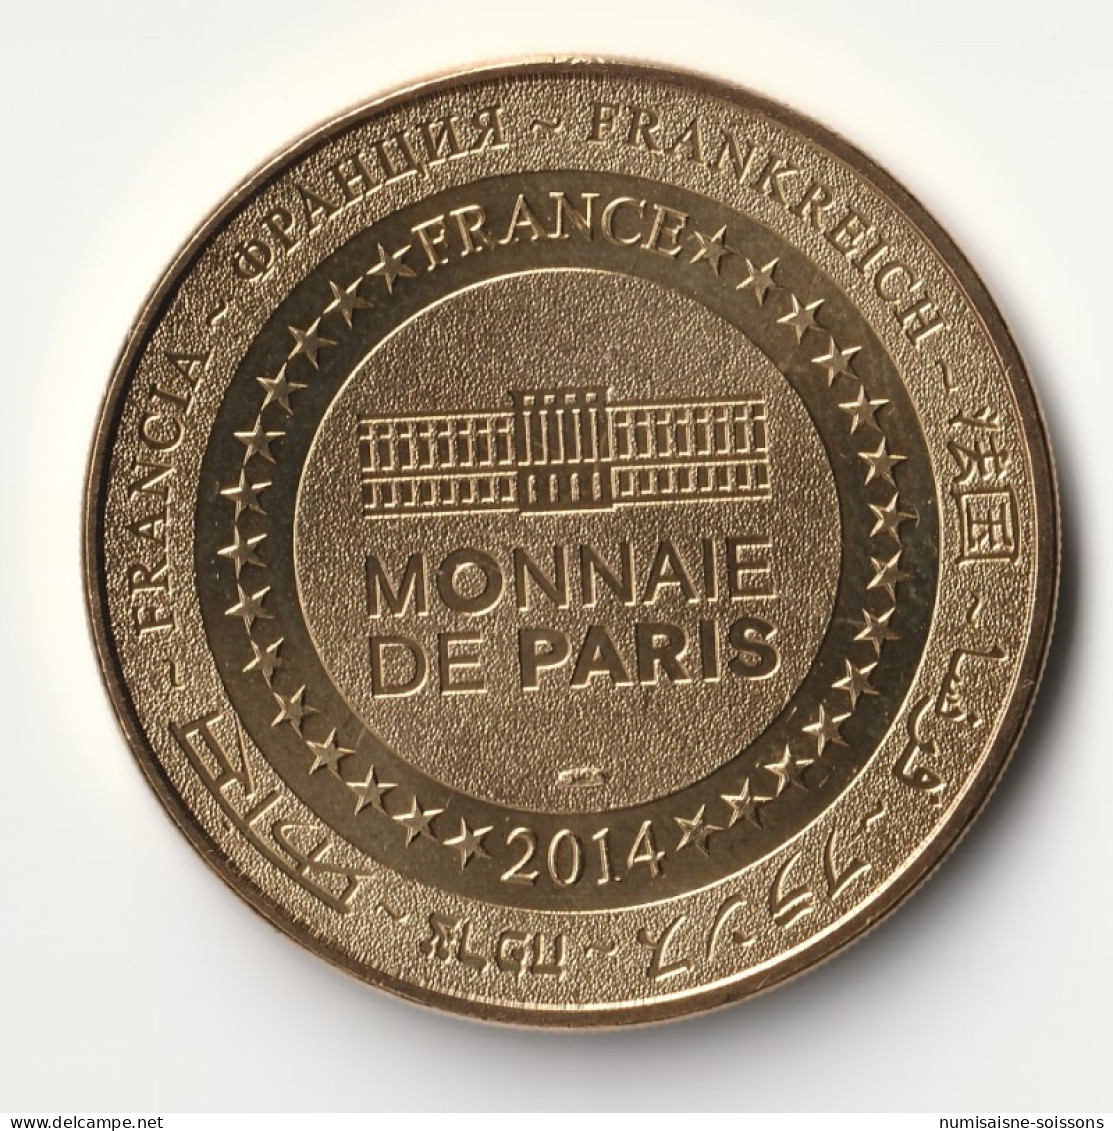 83 - BANDOL - Appellation Controlée - Monnaie De Paris - 2014 - 2014